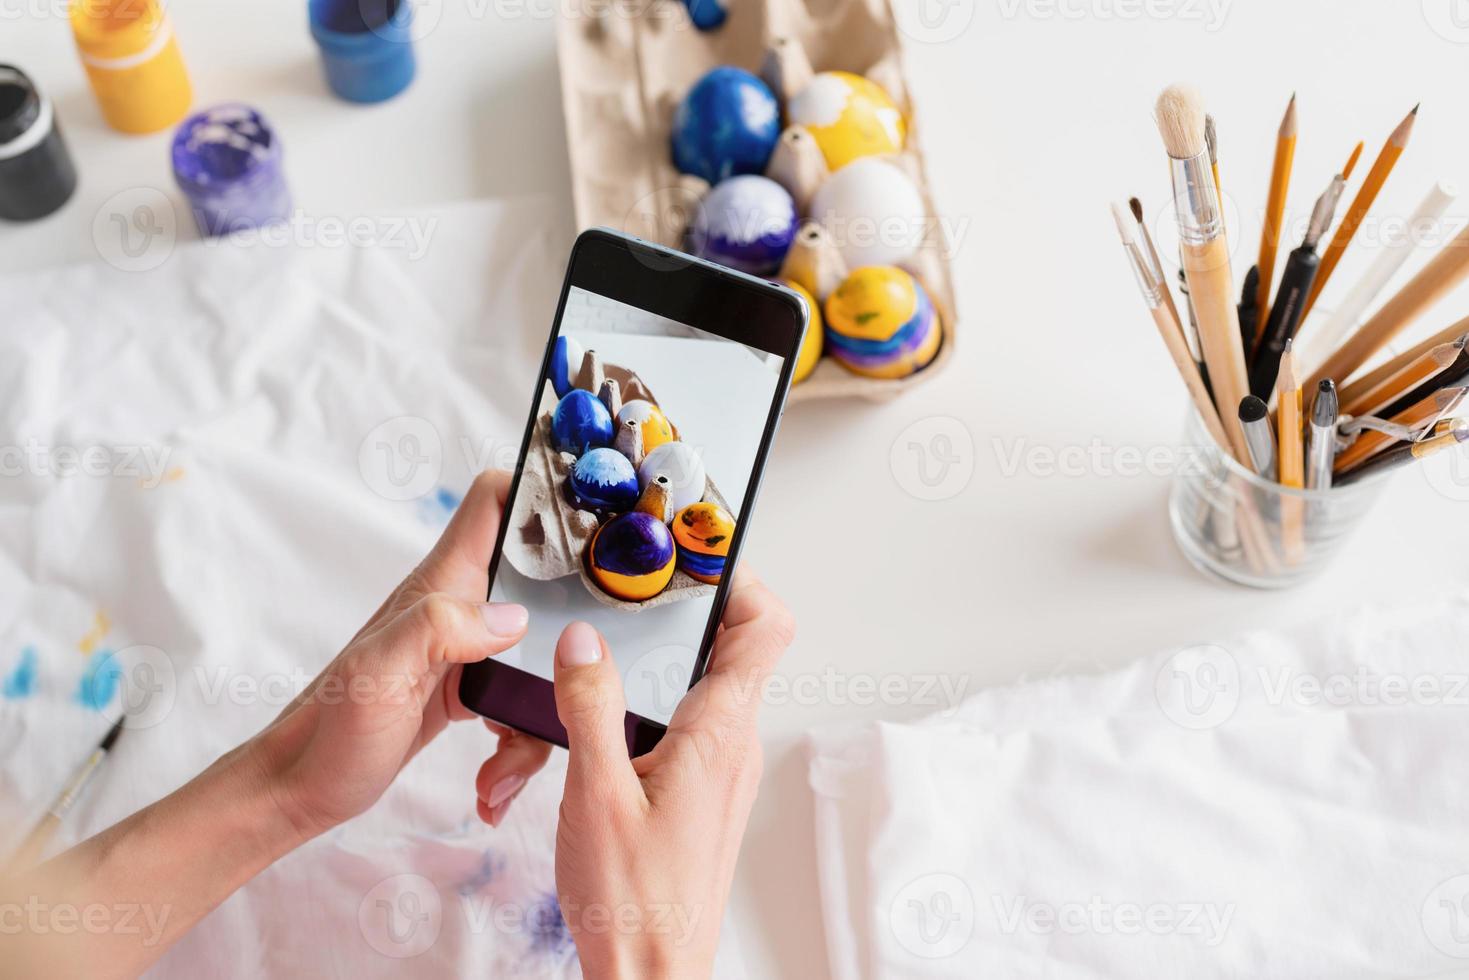 mujer coloreando huevos de pascua en la cocina, tomando fotos en el móvil